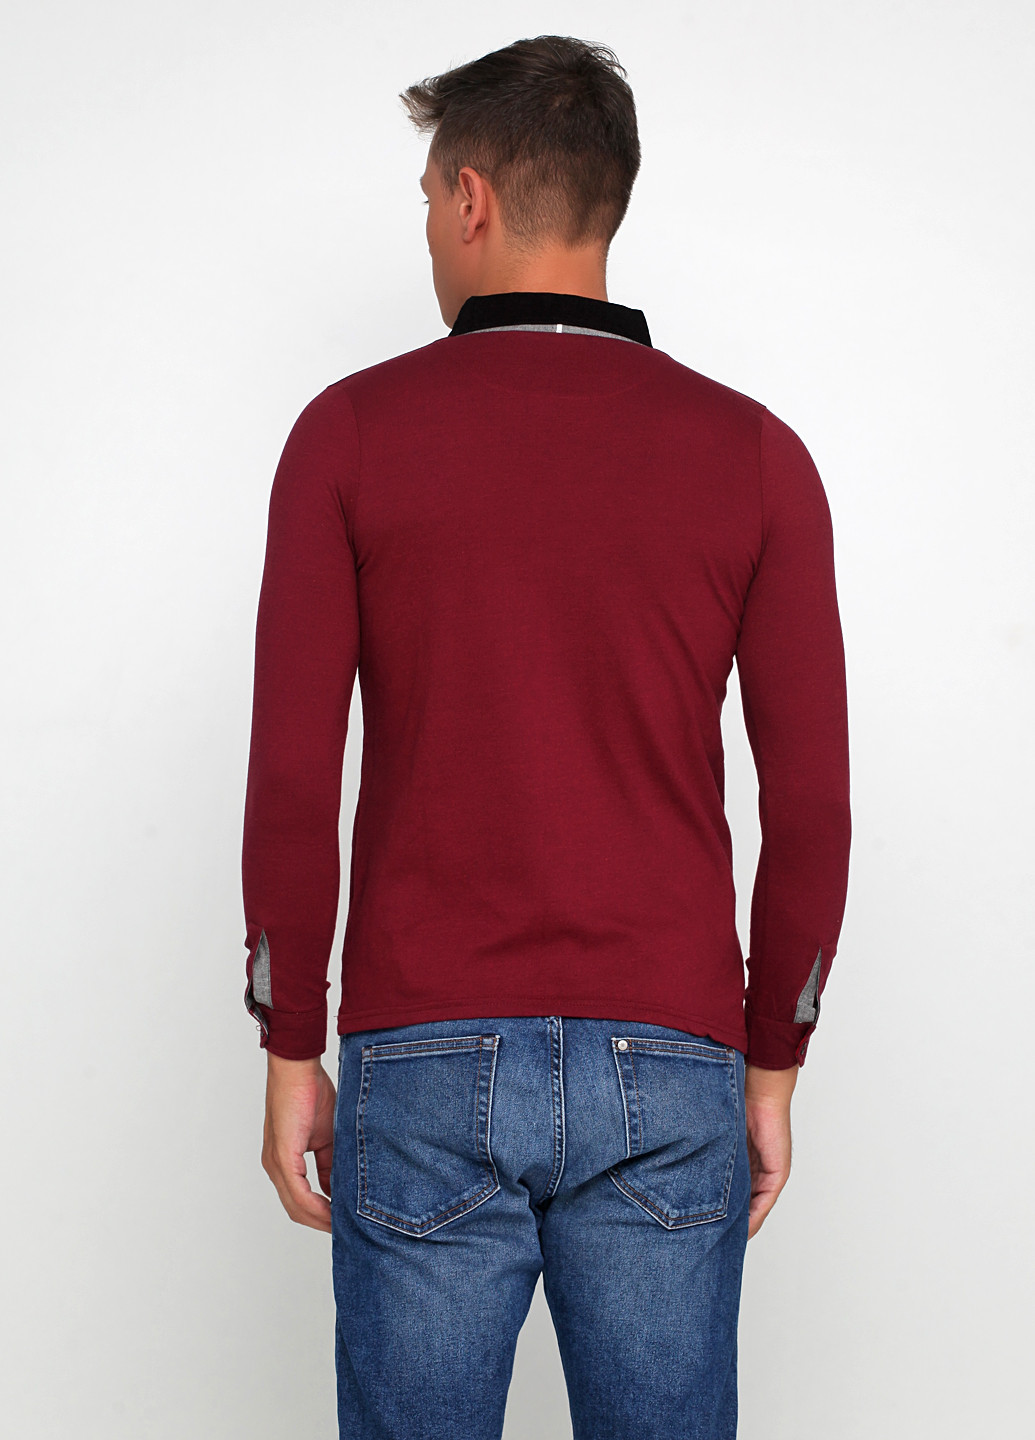 Бордовая футболка-поло для мужчин Mccrain в полоску